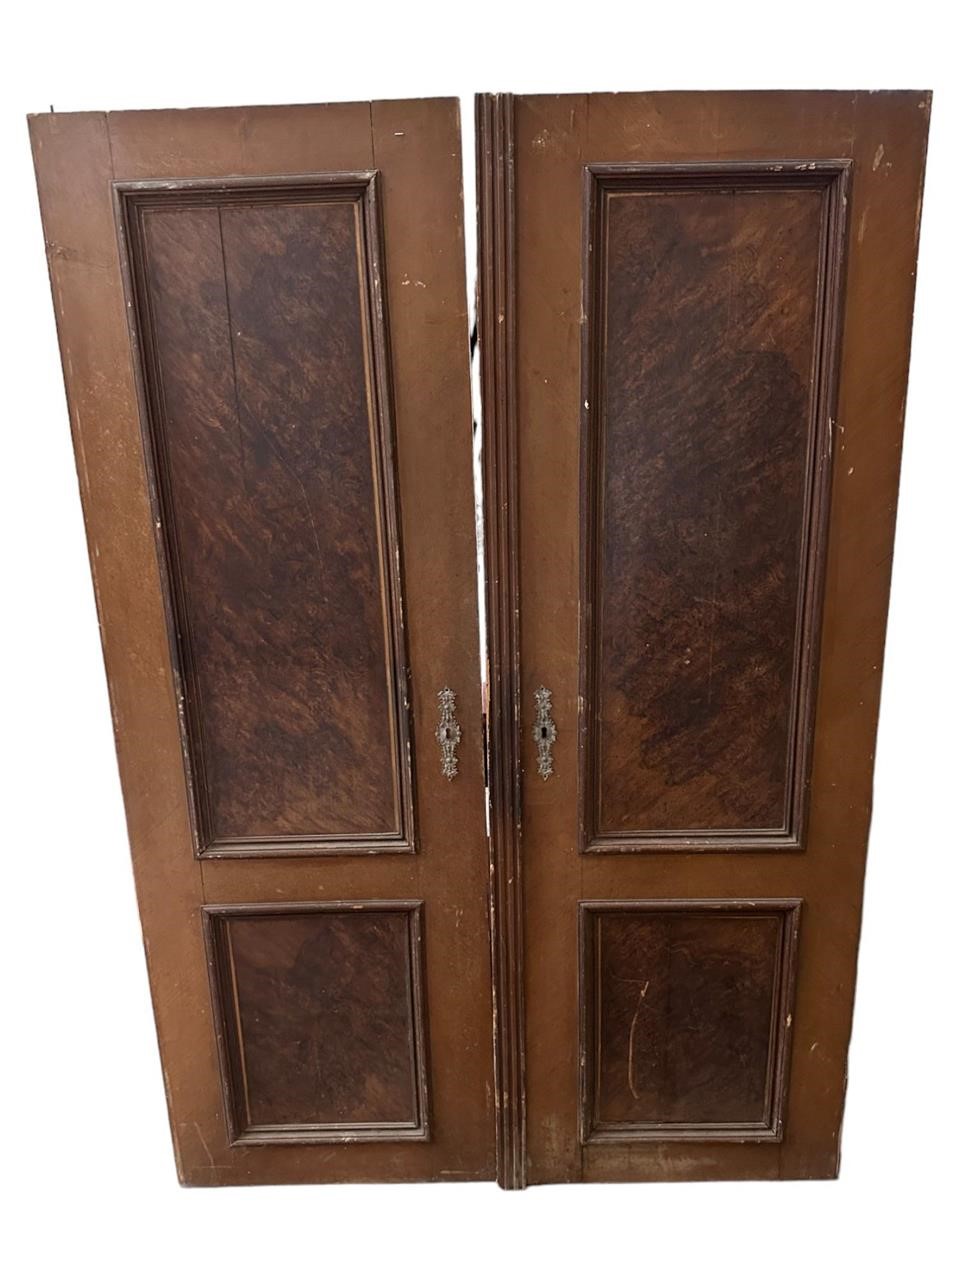 Pair of European Wood Doors, Painted